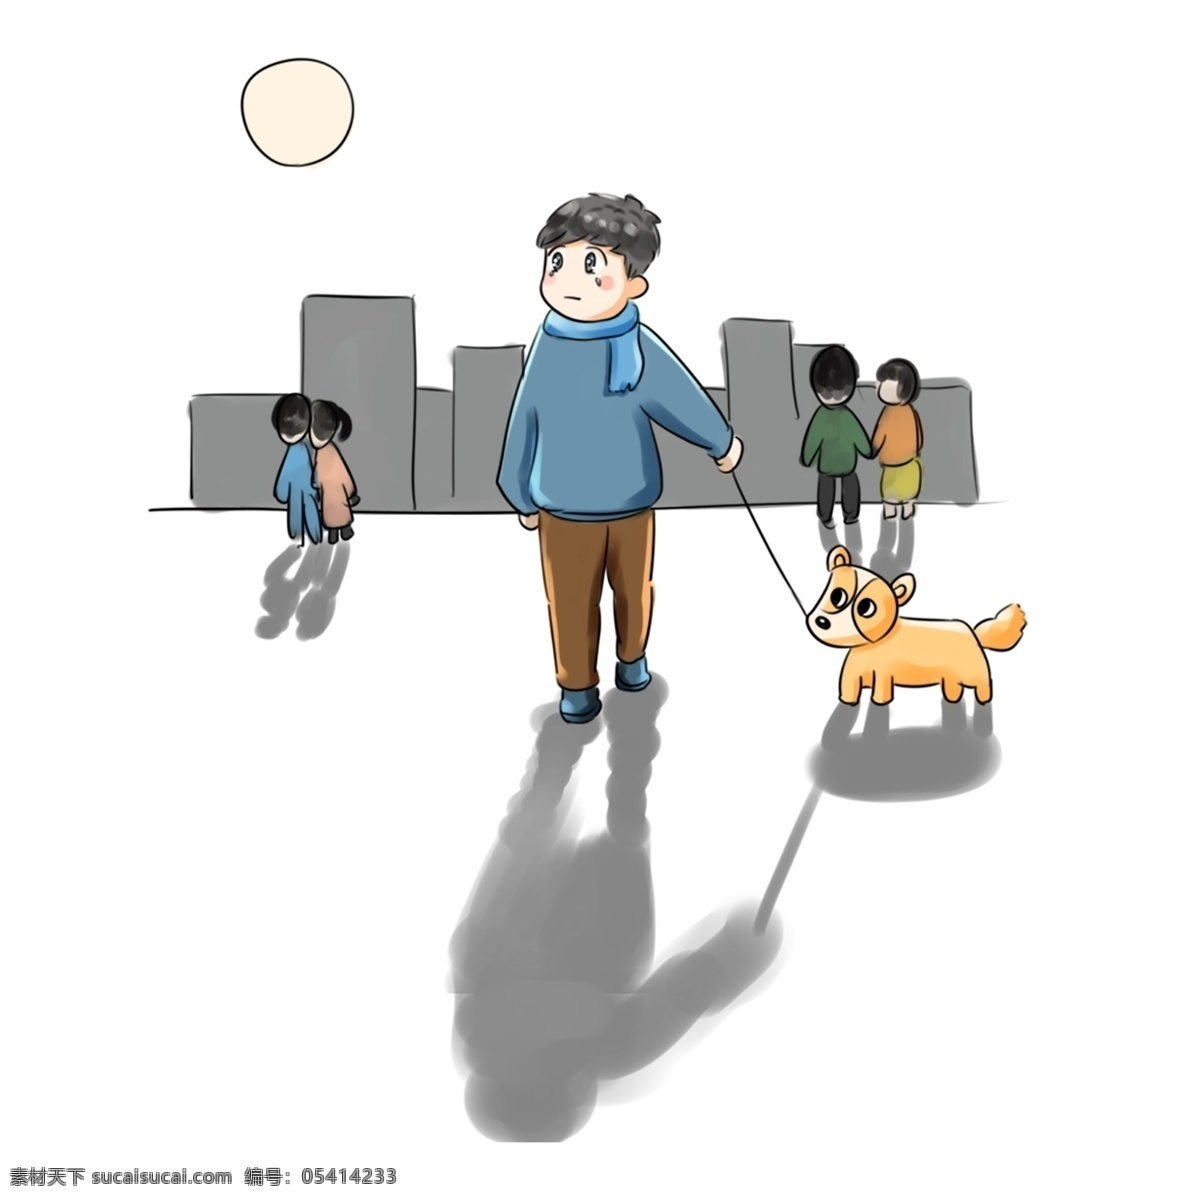 双 光棍 节 系列 卡通 手绘 q 版 遛 狗 乐于助人 善良的人 手绘卡通 光棍节 单身狗 他人 关爱 单身 帮助 一个人 遛狗